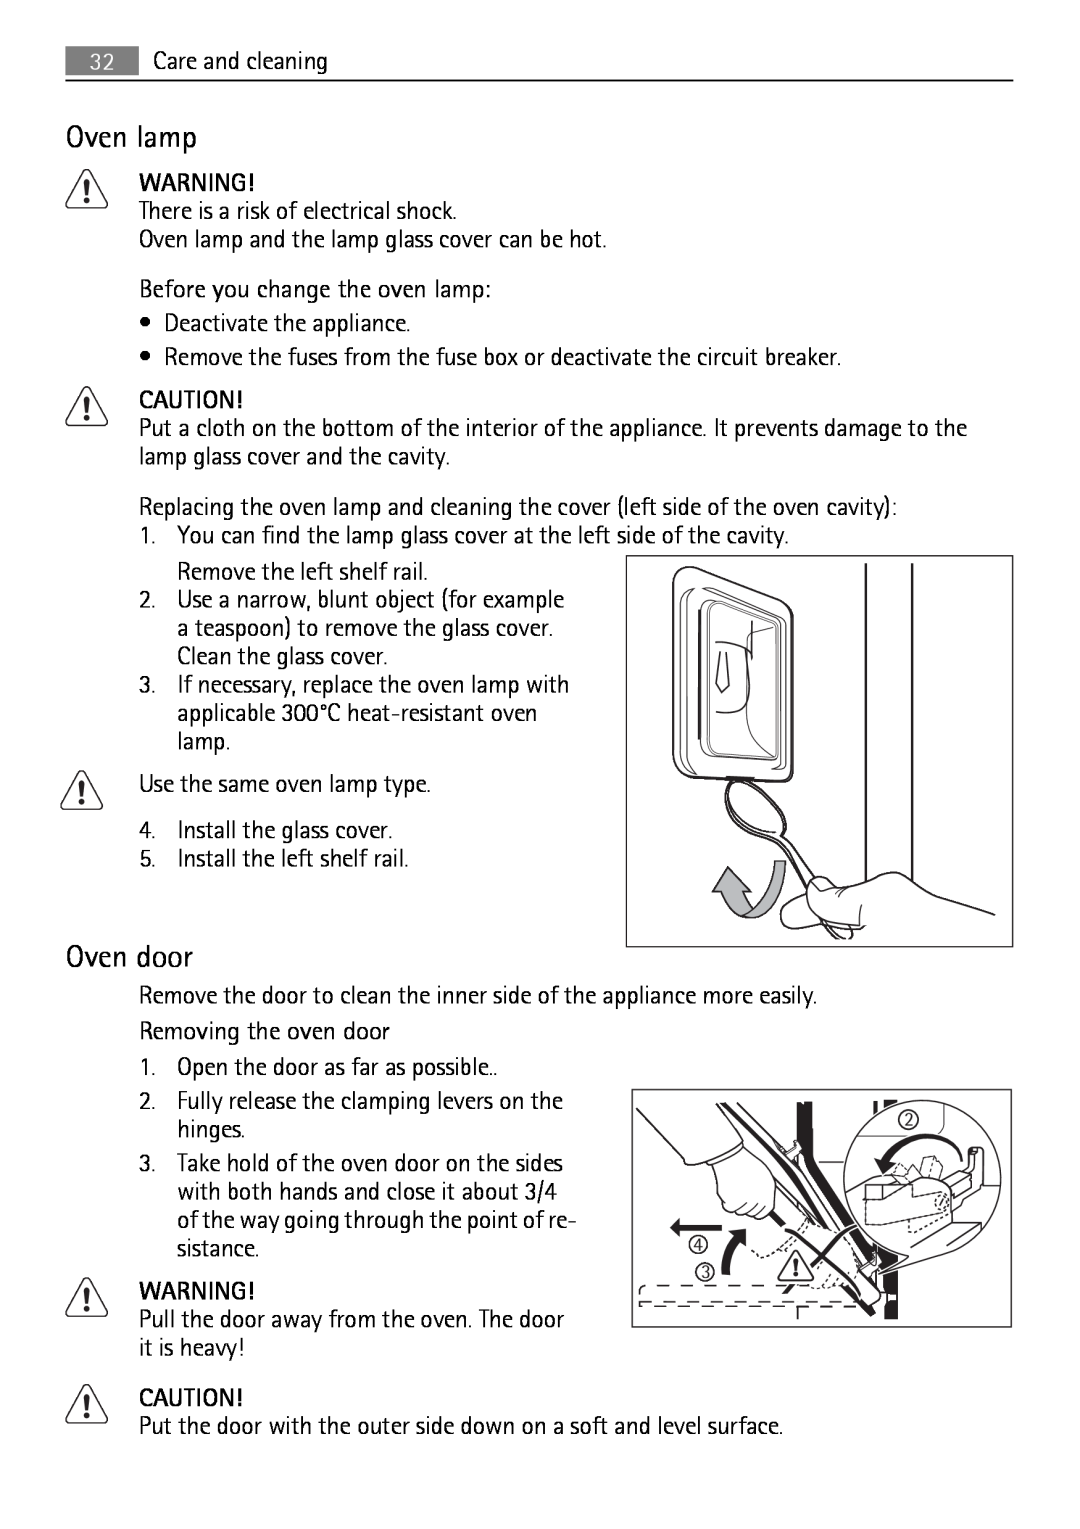 AEG KB7100000 user manual Oven lamp, Oven door 